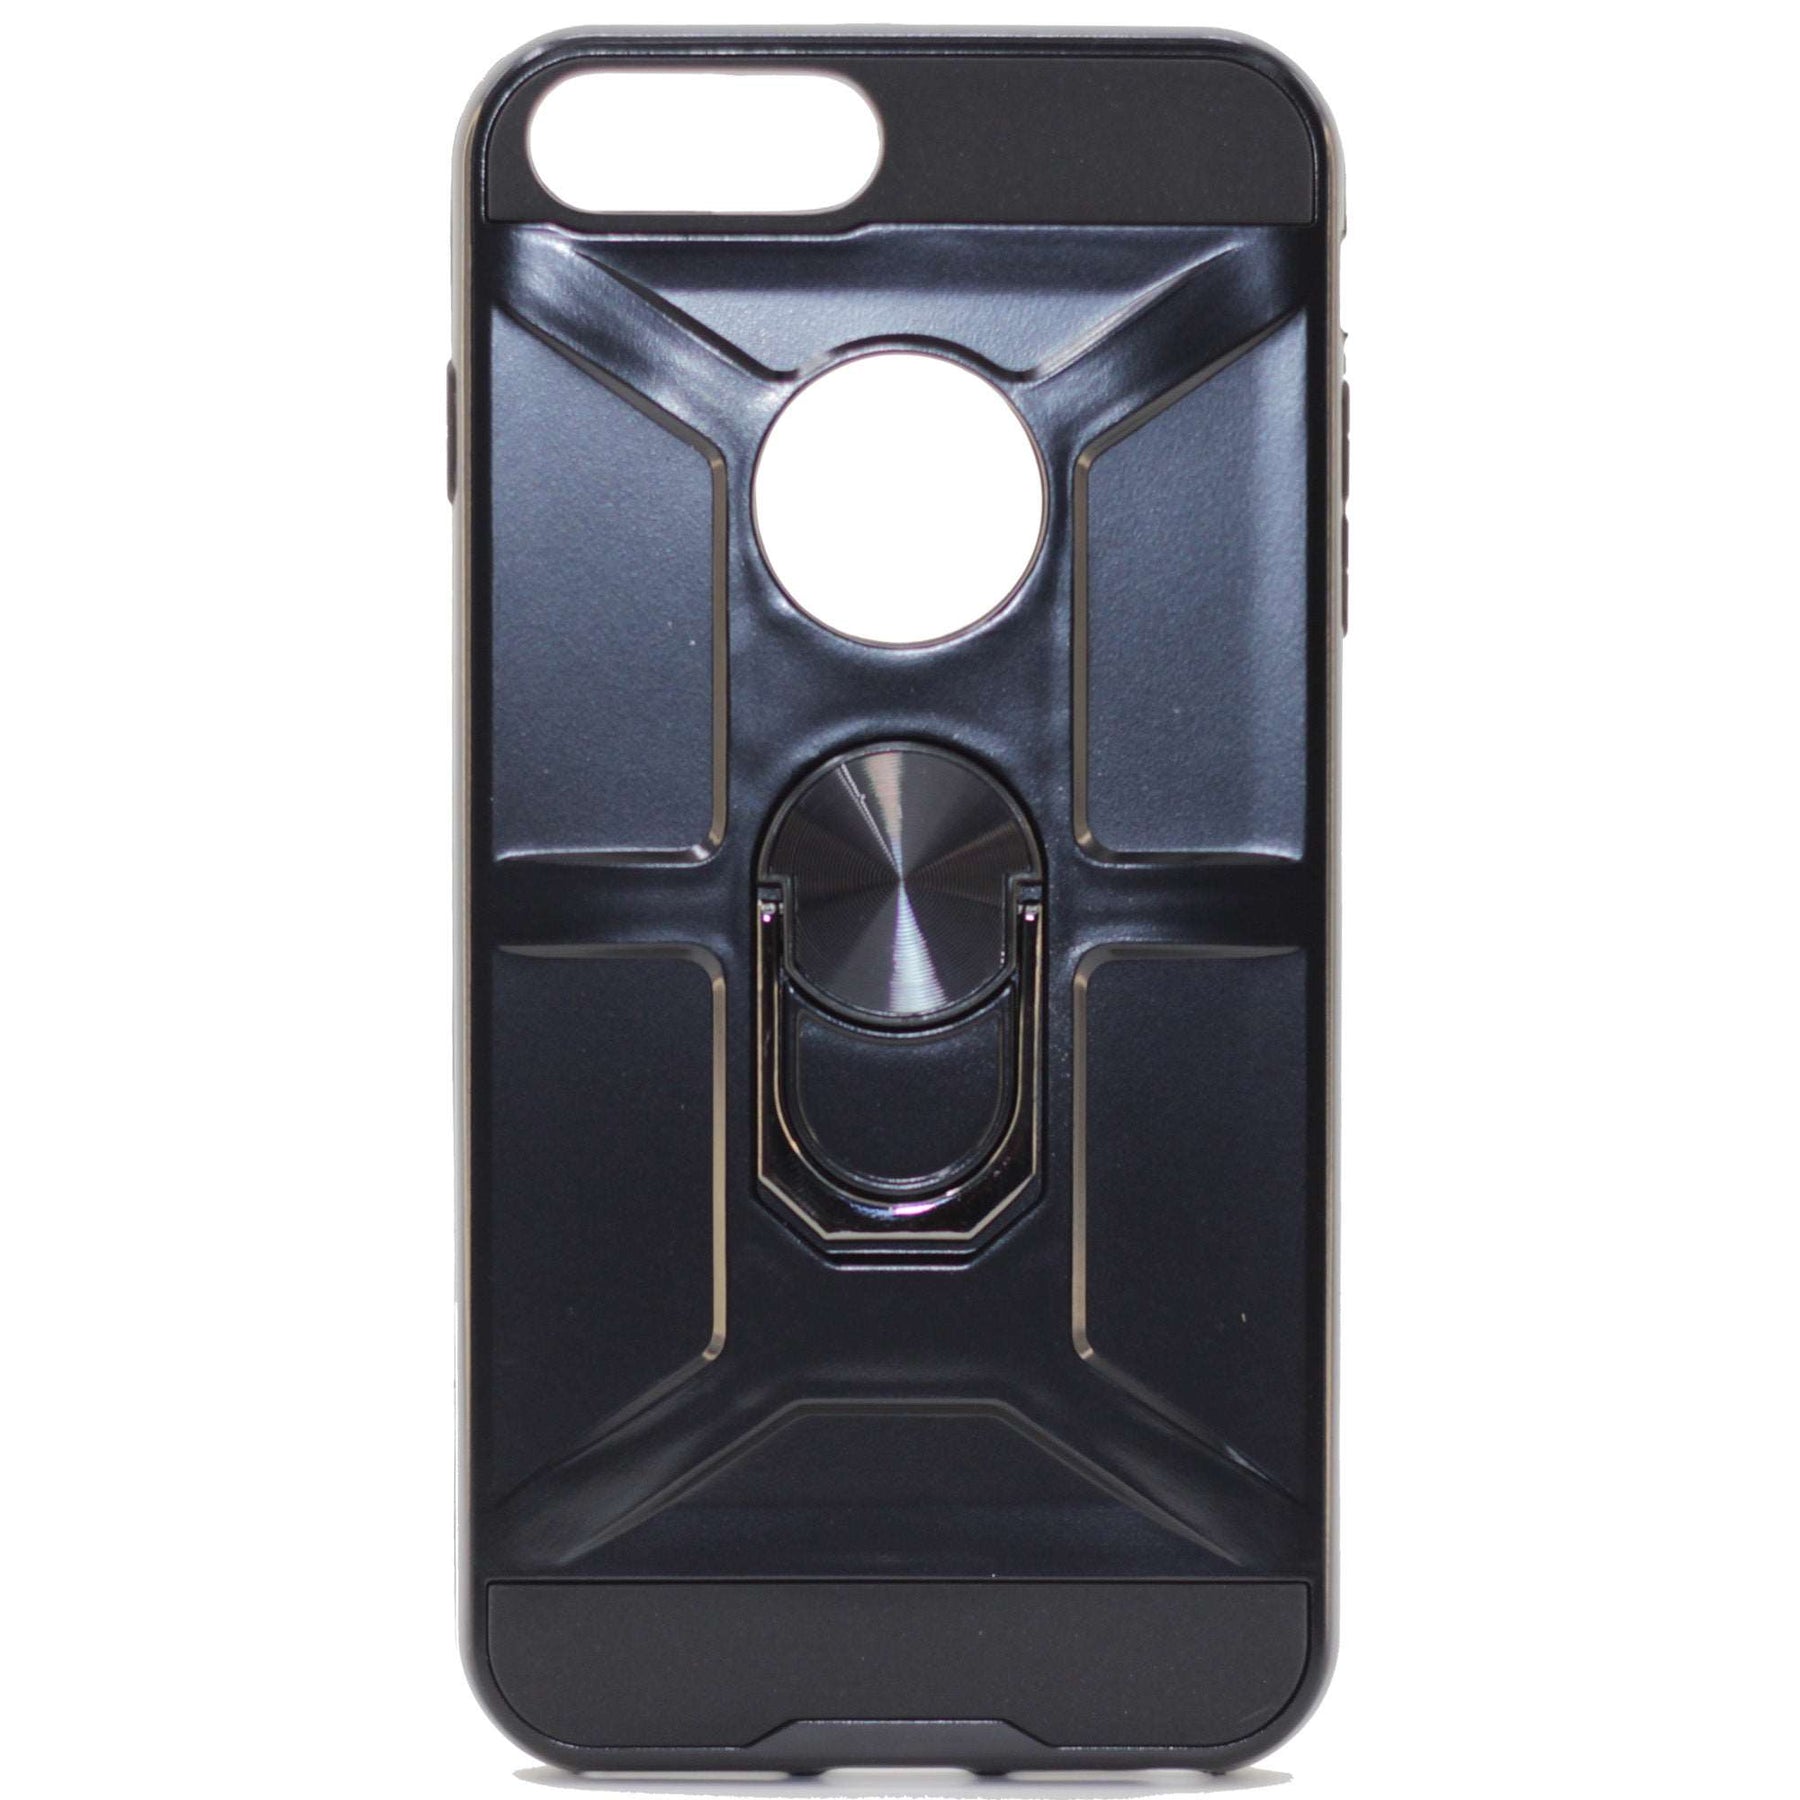 iPhone 7/8 plus black ring case